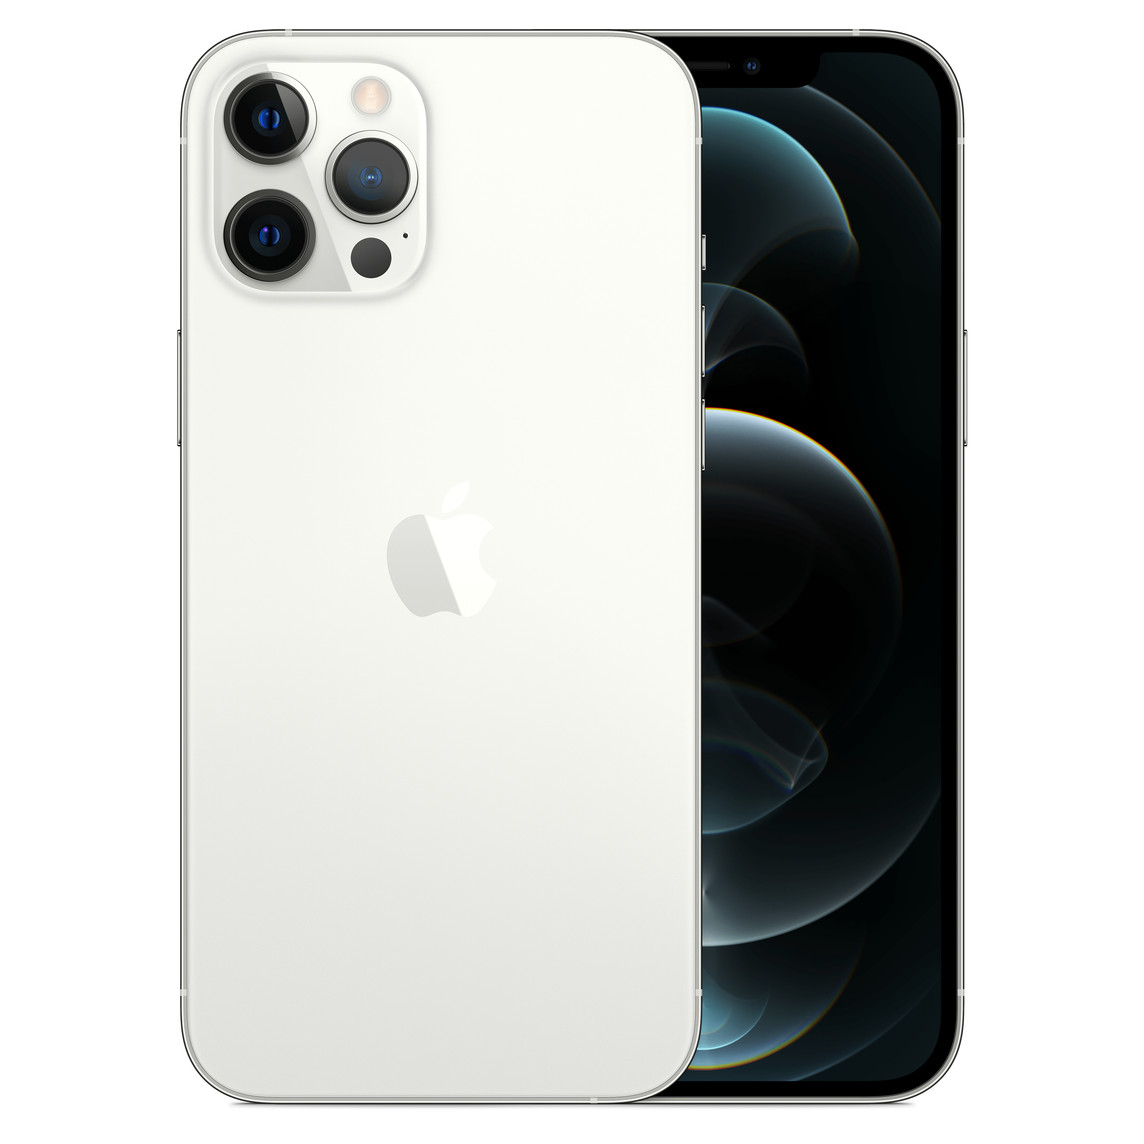 Zilverkleurige iPhone 12 Pro Max, pro-camerasysteem met True Tone Flash, LiDAR, microfoon, Apple logo in het midden. Voorkant, all-screendisplay